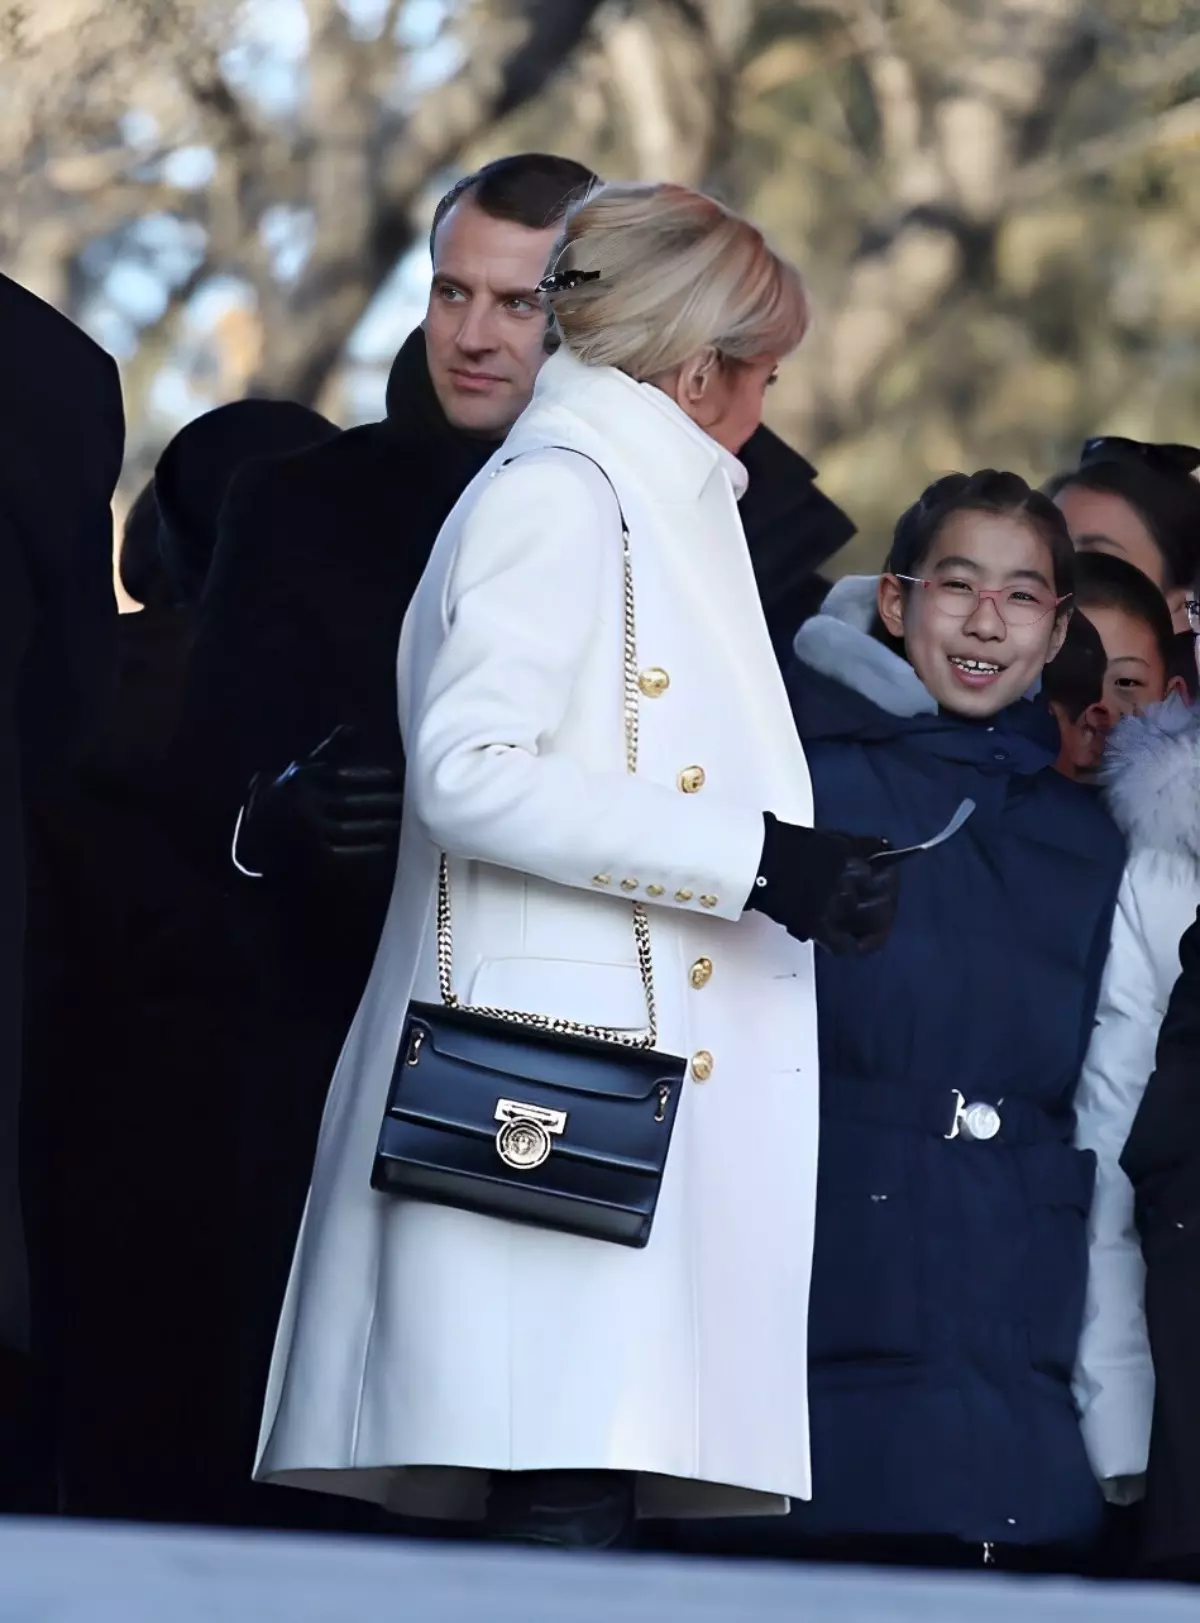 brigitte macron avec un manteau blanc et un sac noir dans un evenement public